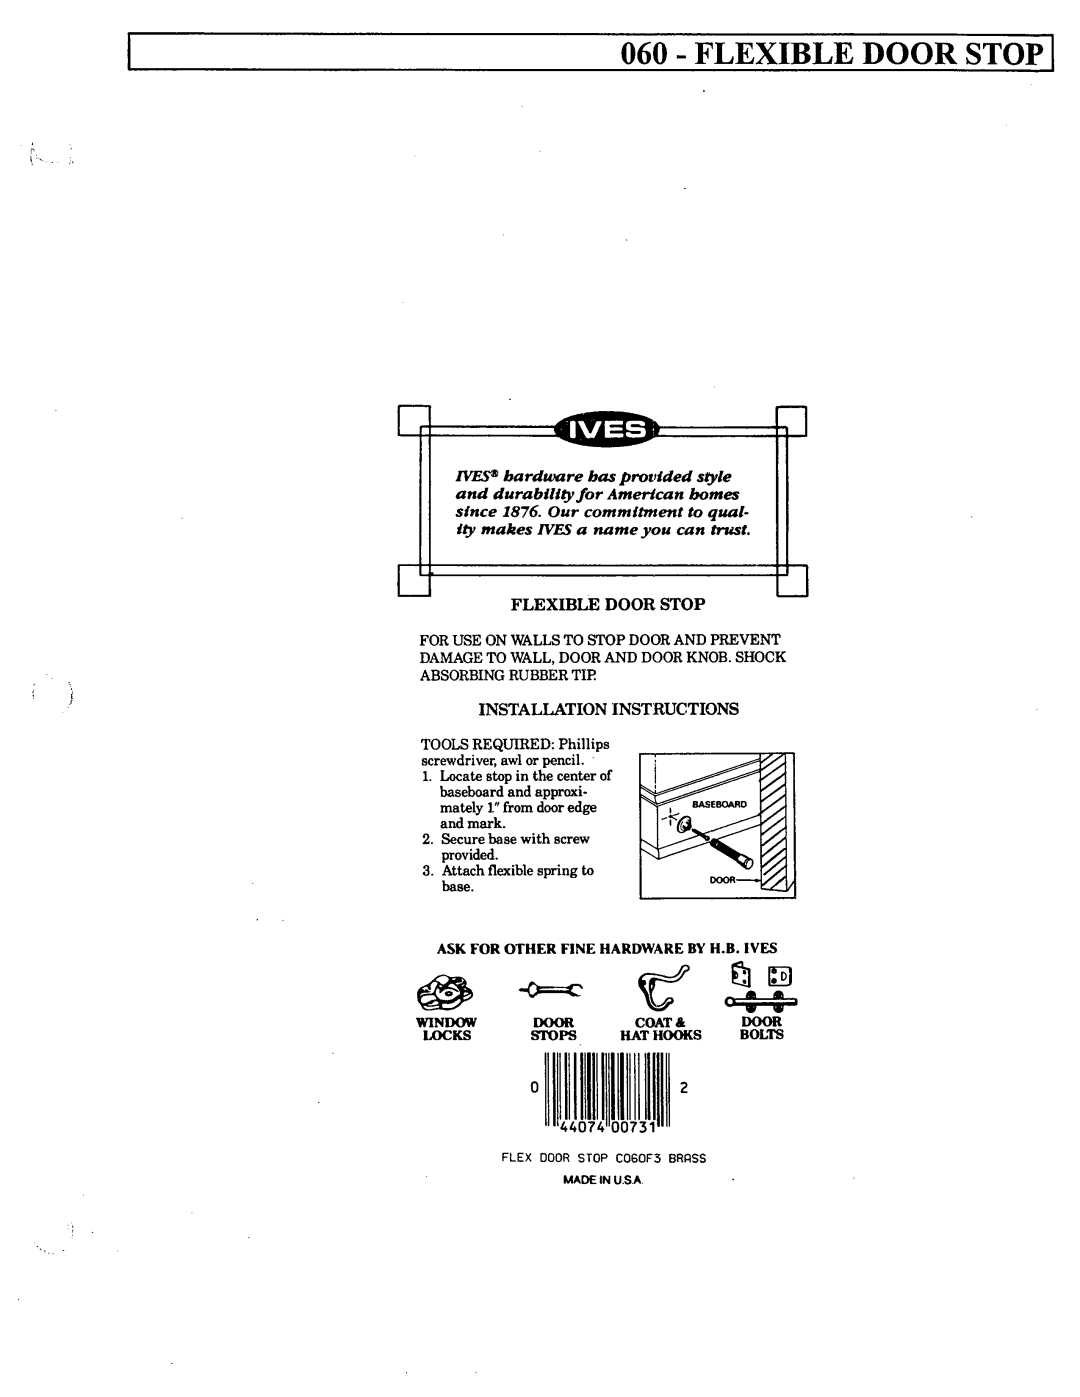 Ives 060 manual 